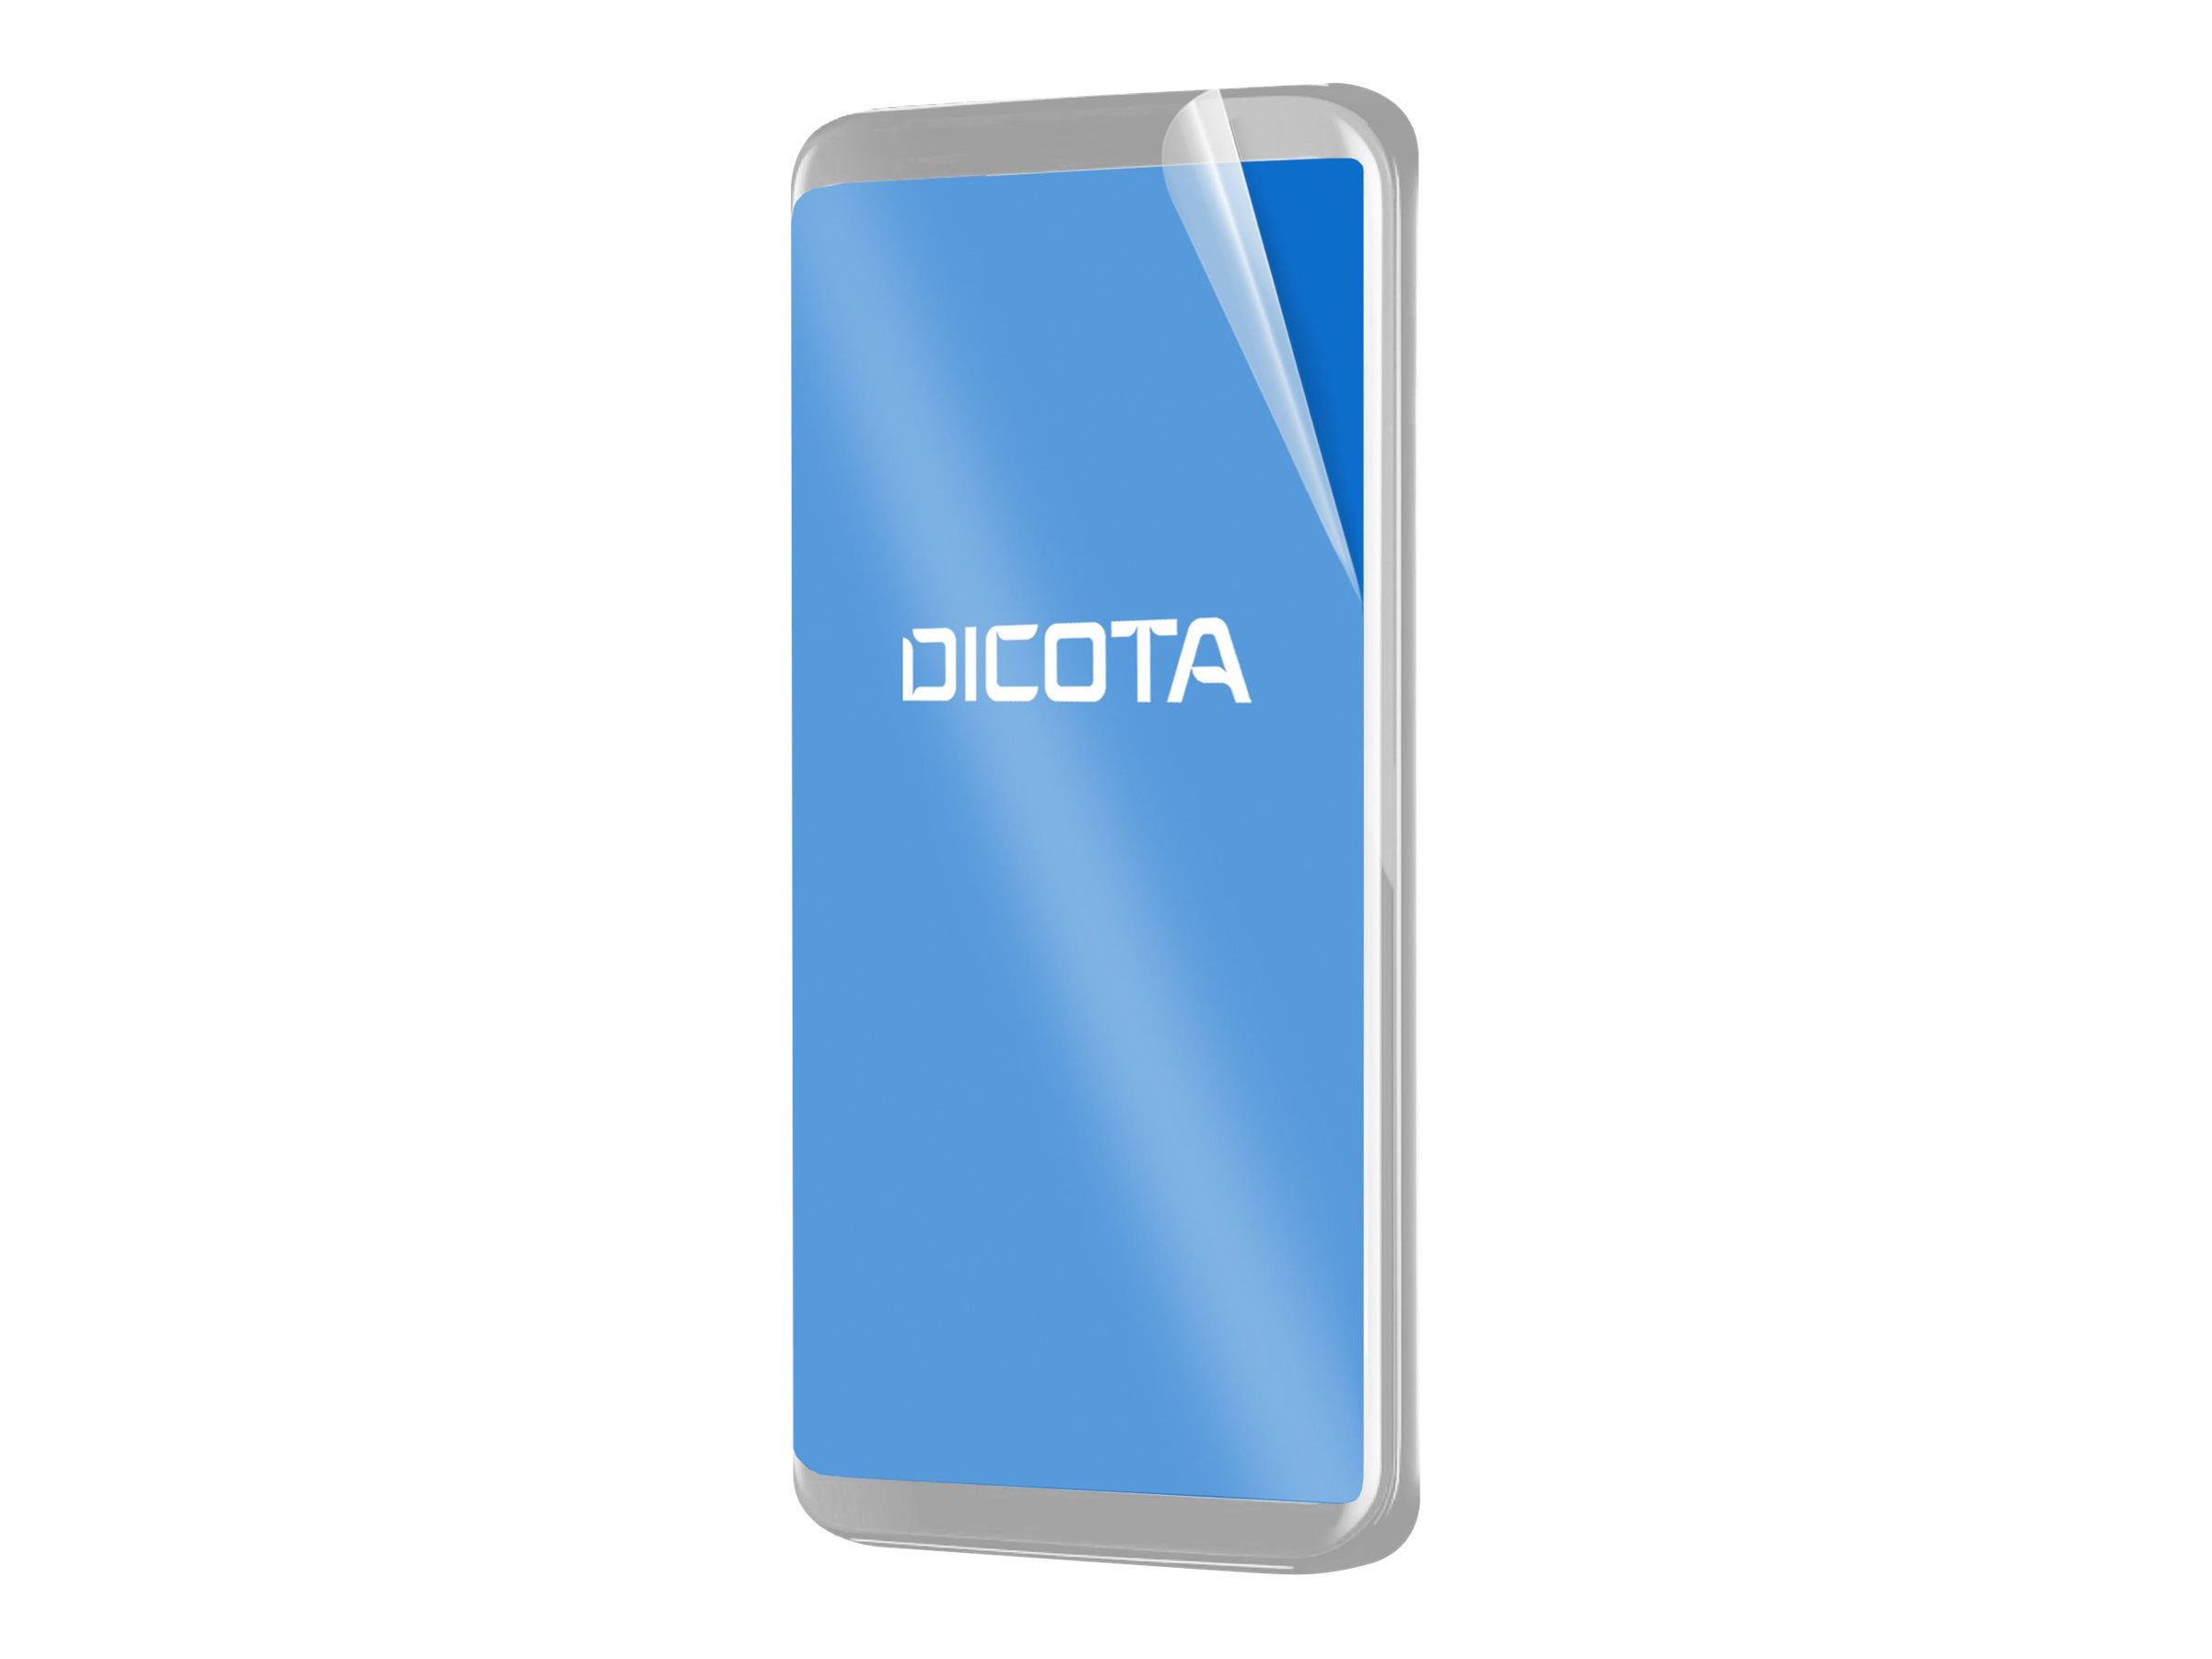 DICOTA - Bildschirmschutz fr Handy - antimikrobieller Filter, 2H, selbstklebend - Folie - durchsichtig - fr Samsung Galaxy Xco